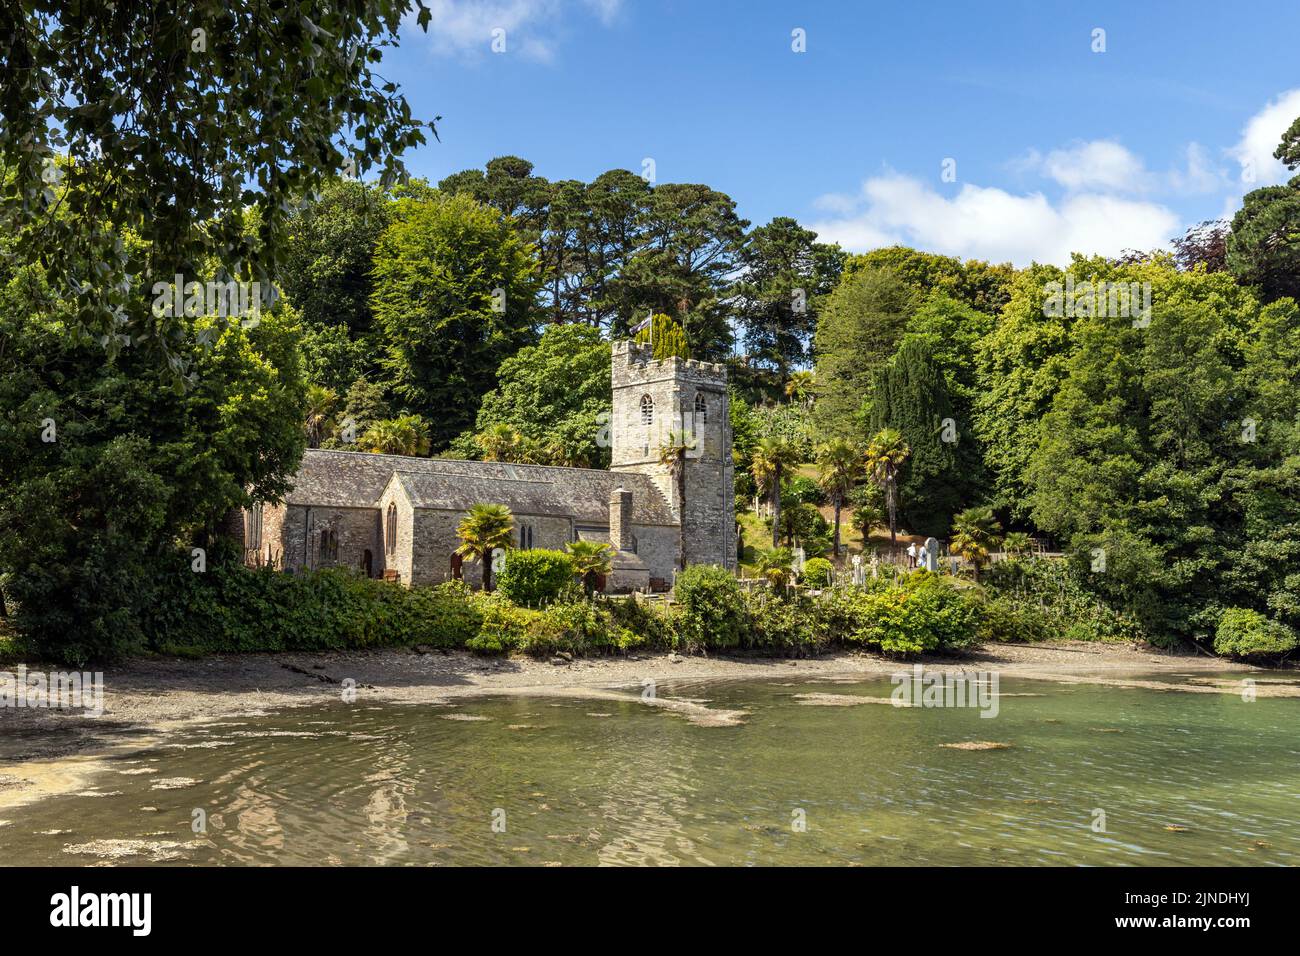 Die hübsche St. in der Kirche von Roseland. In einem subtropischen Garten am Rande eines Baches am Fluss Fal auf der Halbinsel Roseland in Cornwall gelegen. Stockfoto